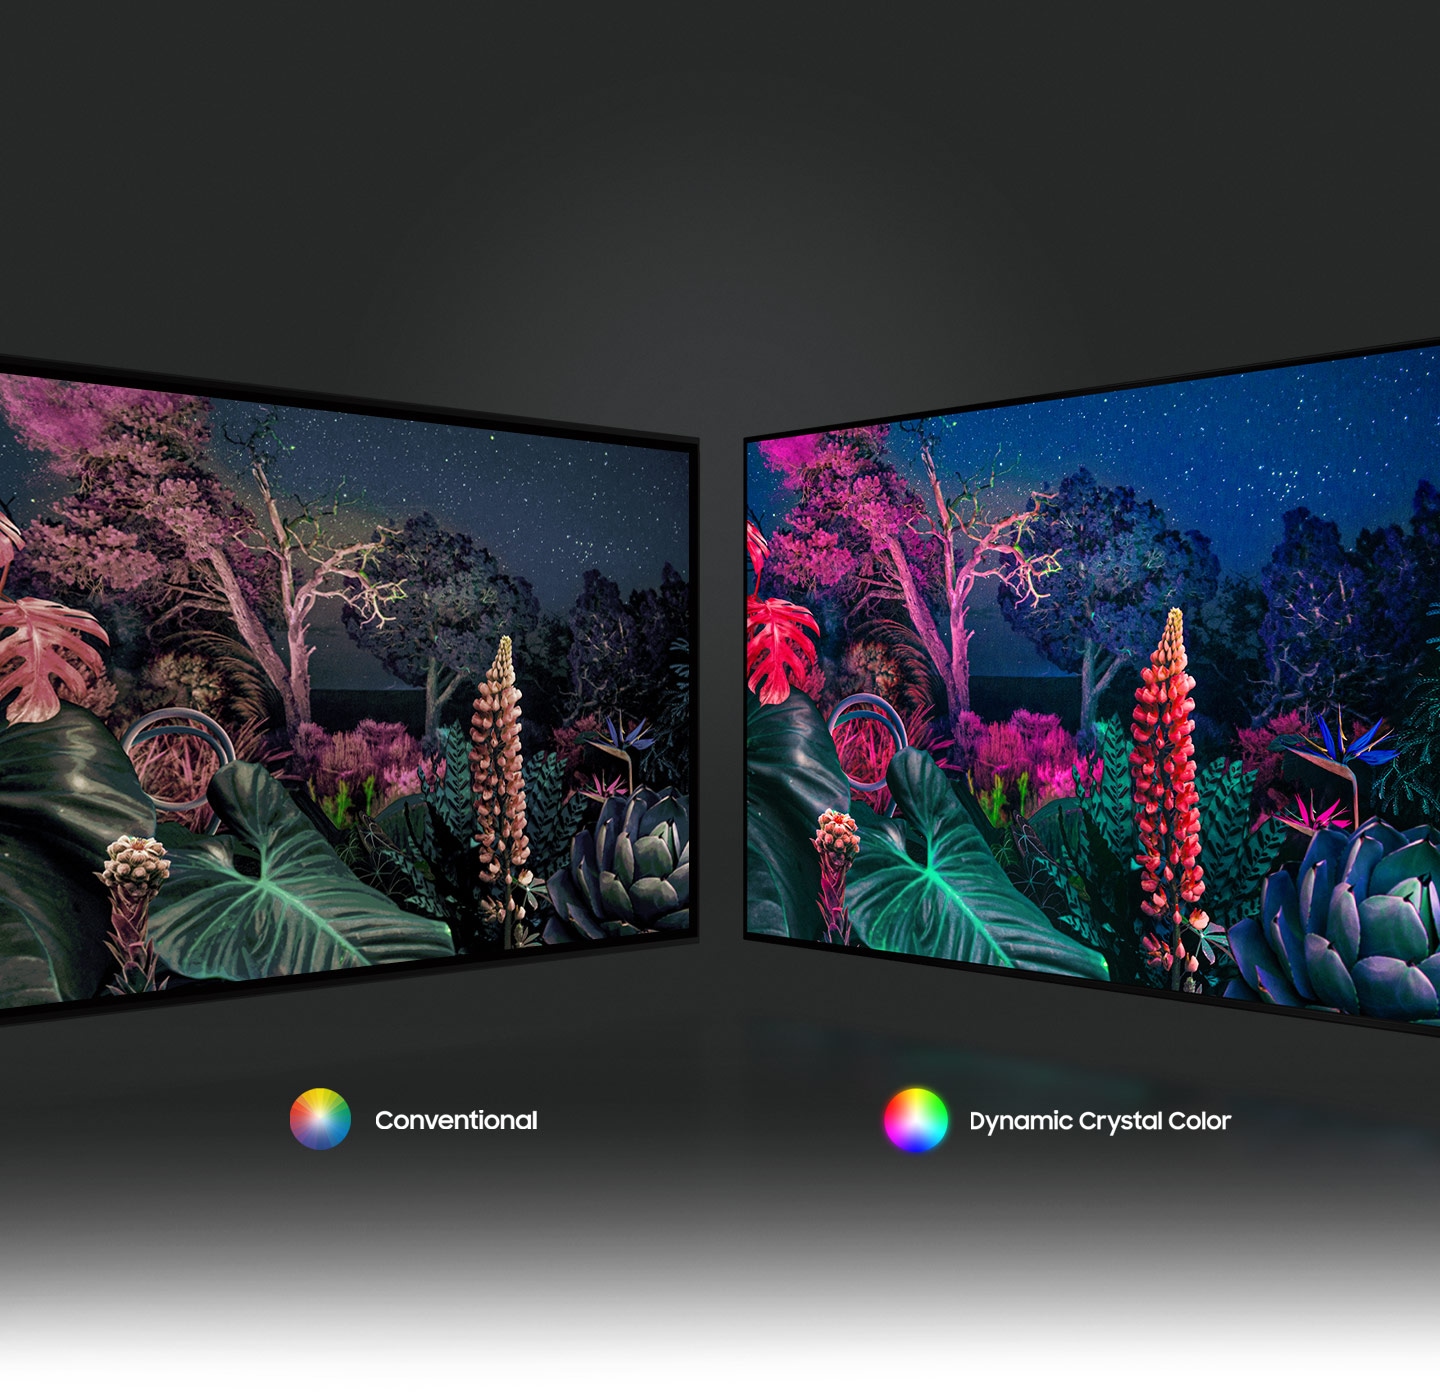 Nhờ công nghệ Dynamic Crystal Color, hình ảnh khu rừng bên phải hiển thị hình ảnh màu sắc phức tạp hơn so với công nghệ truyền thống bên trái.